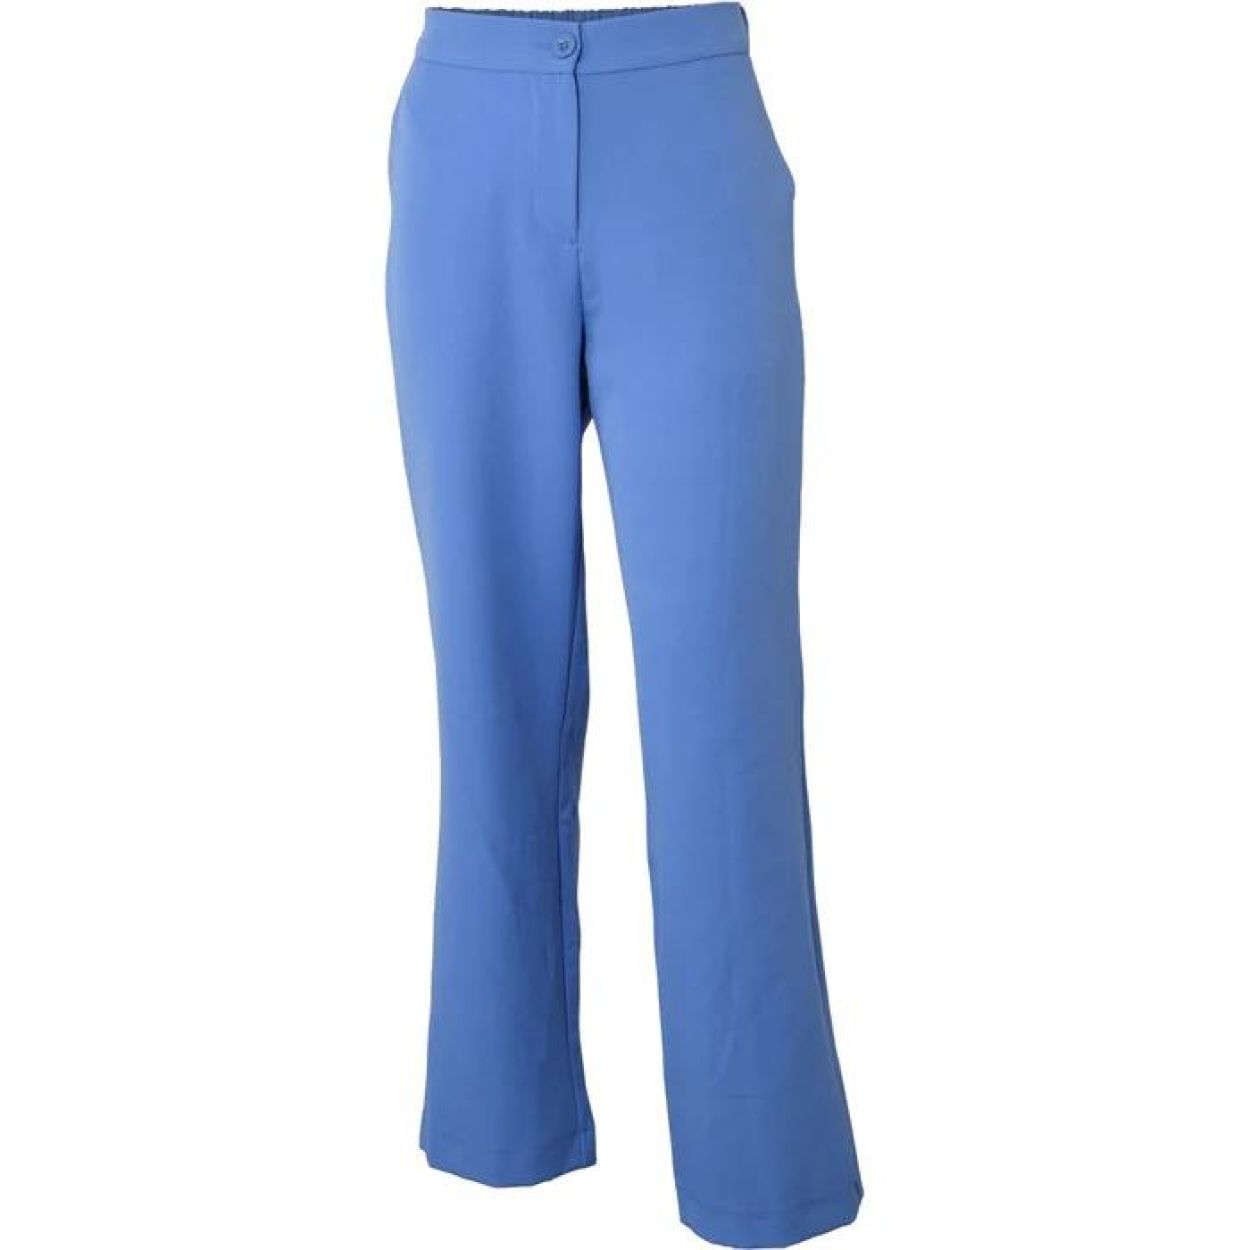 HOUNd Pants (7231251/310 Sky blue) - WeekendMode